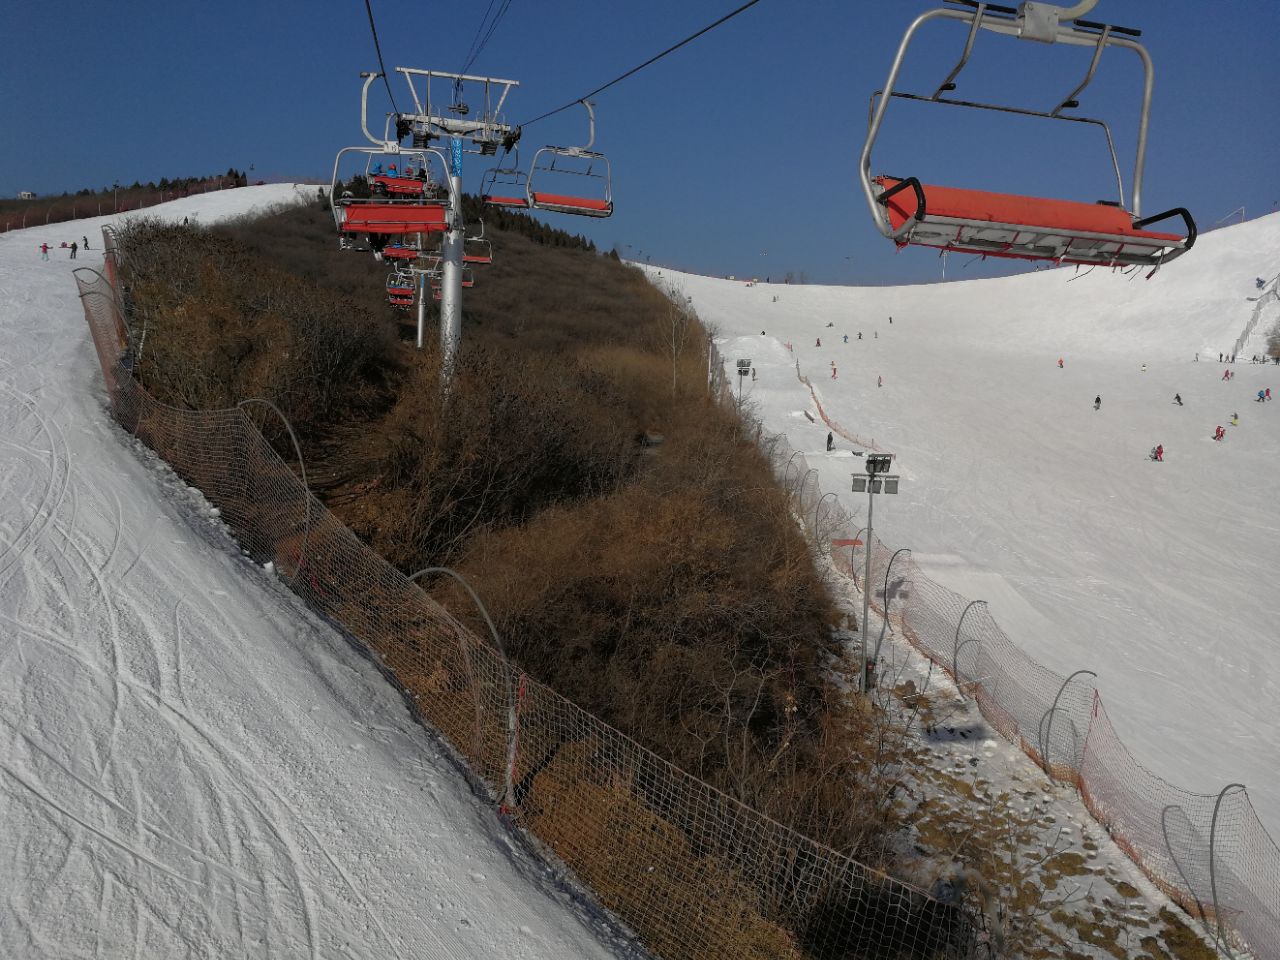 万龙八易滑雪场